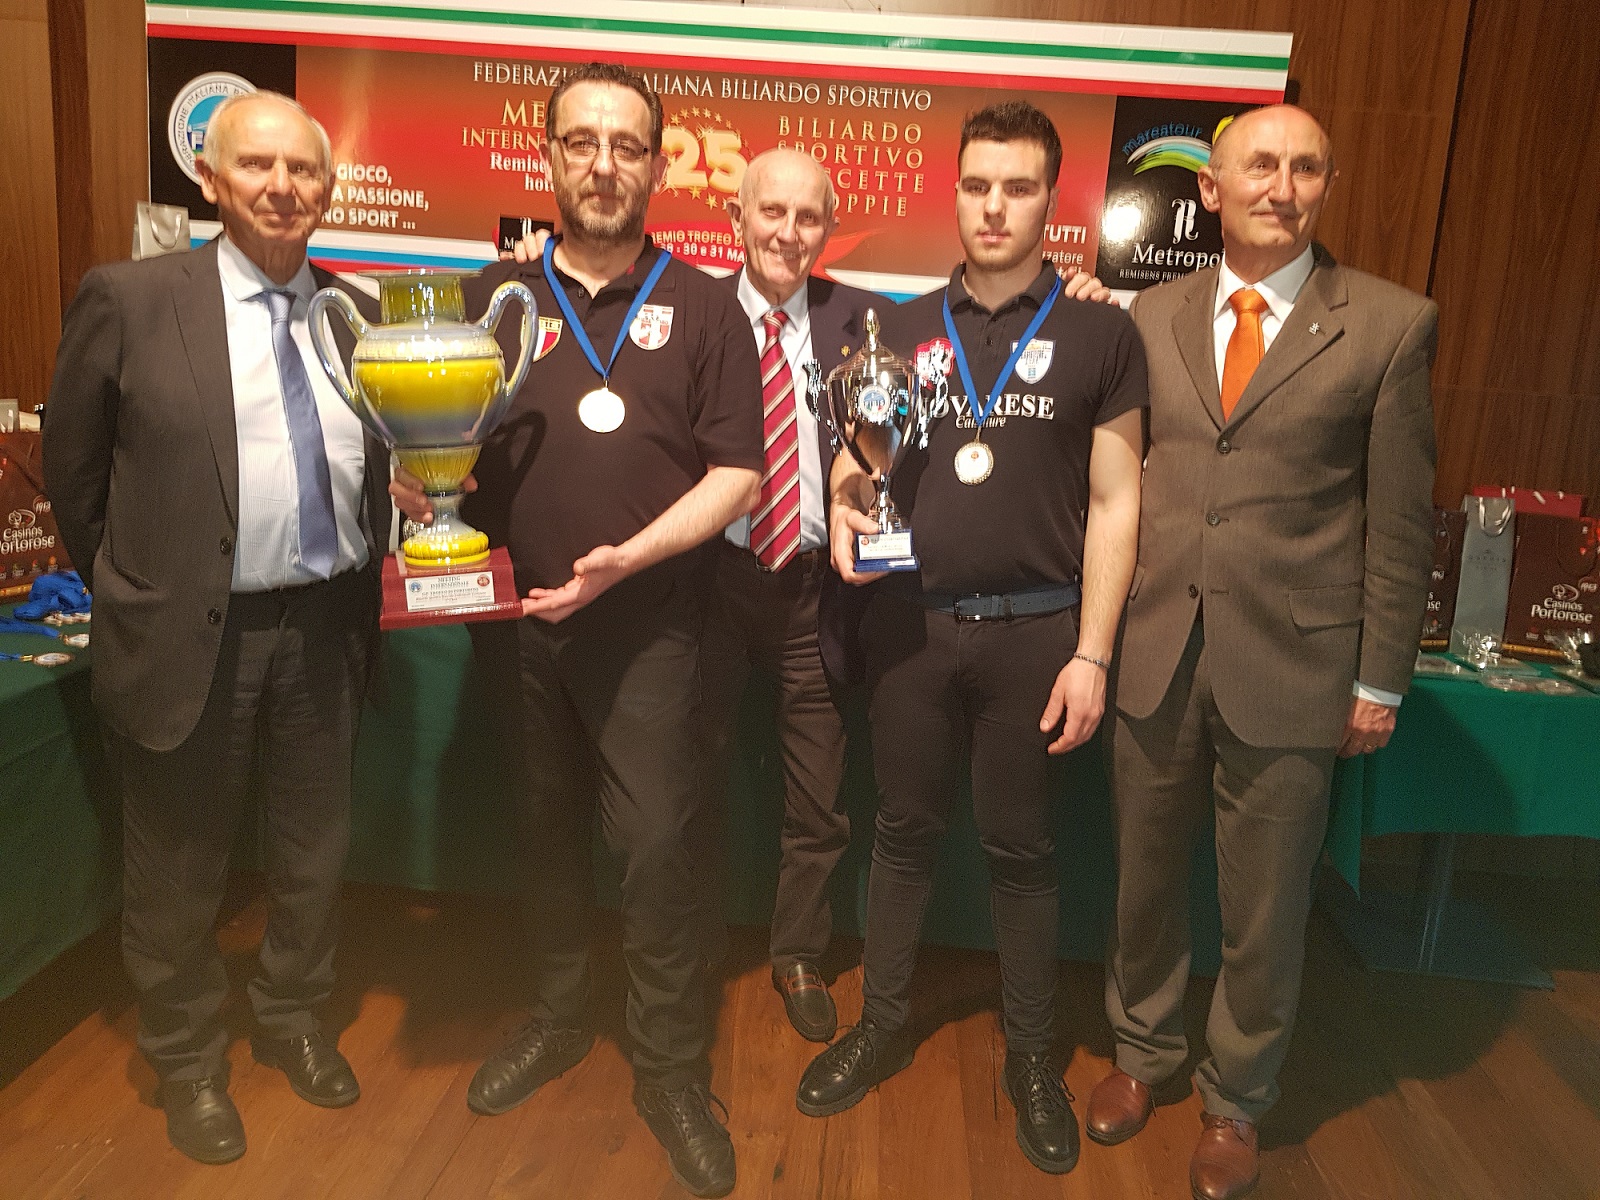 25° Meeting internazionale di biliardo boccette: Minoccheri vince la goriziana individuale